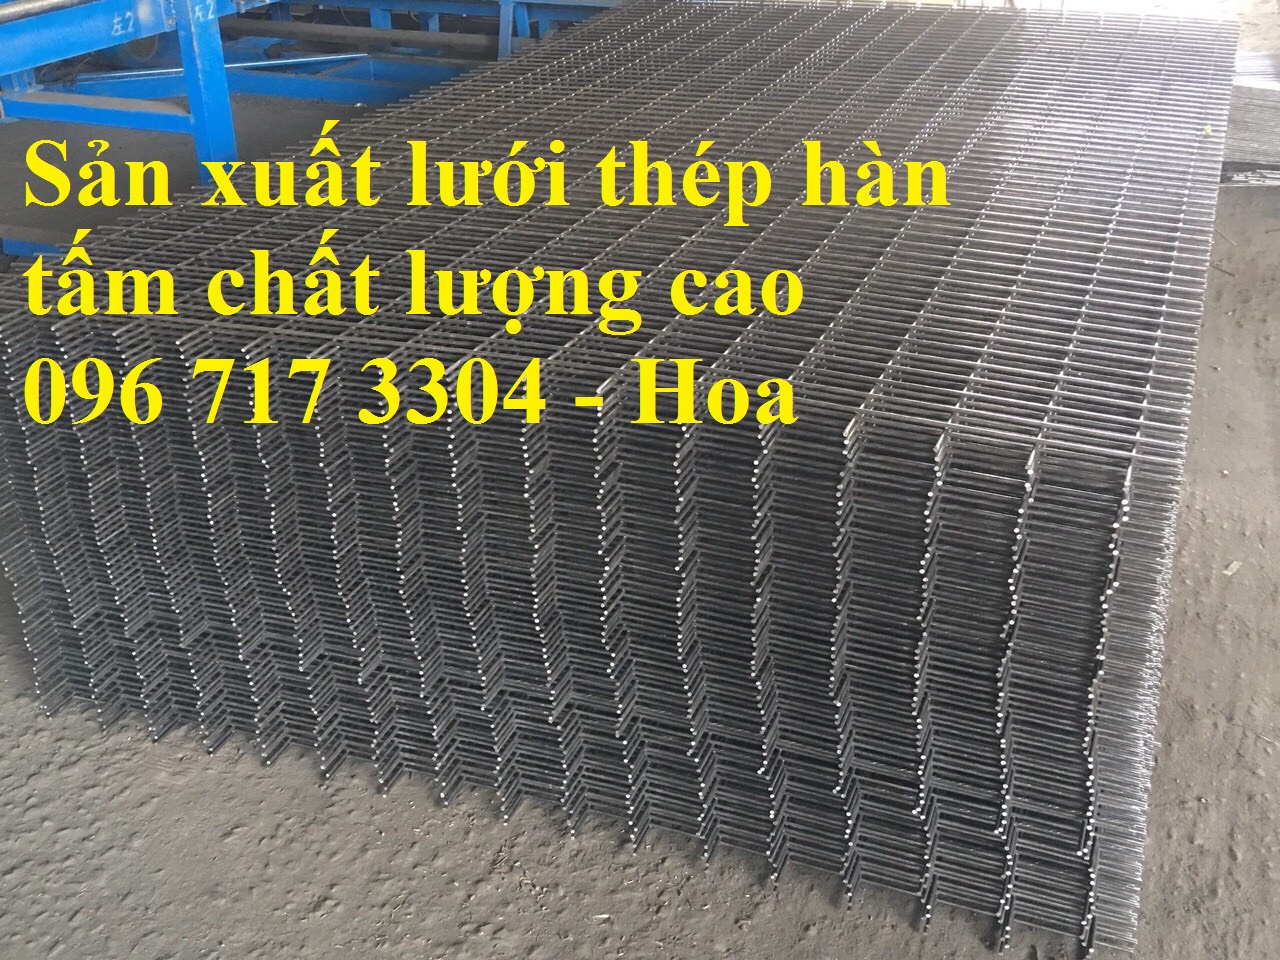 Nhà sản xuất lưới thép hàn A10 (D10a200x200) giá rẻ - 096 717 3304 - 5